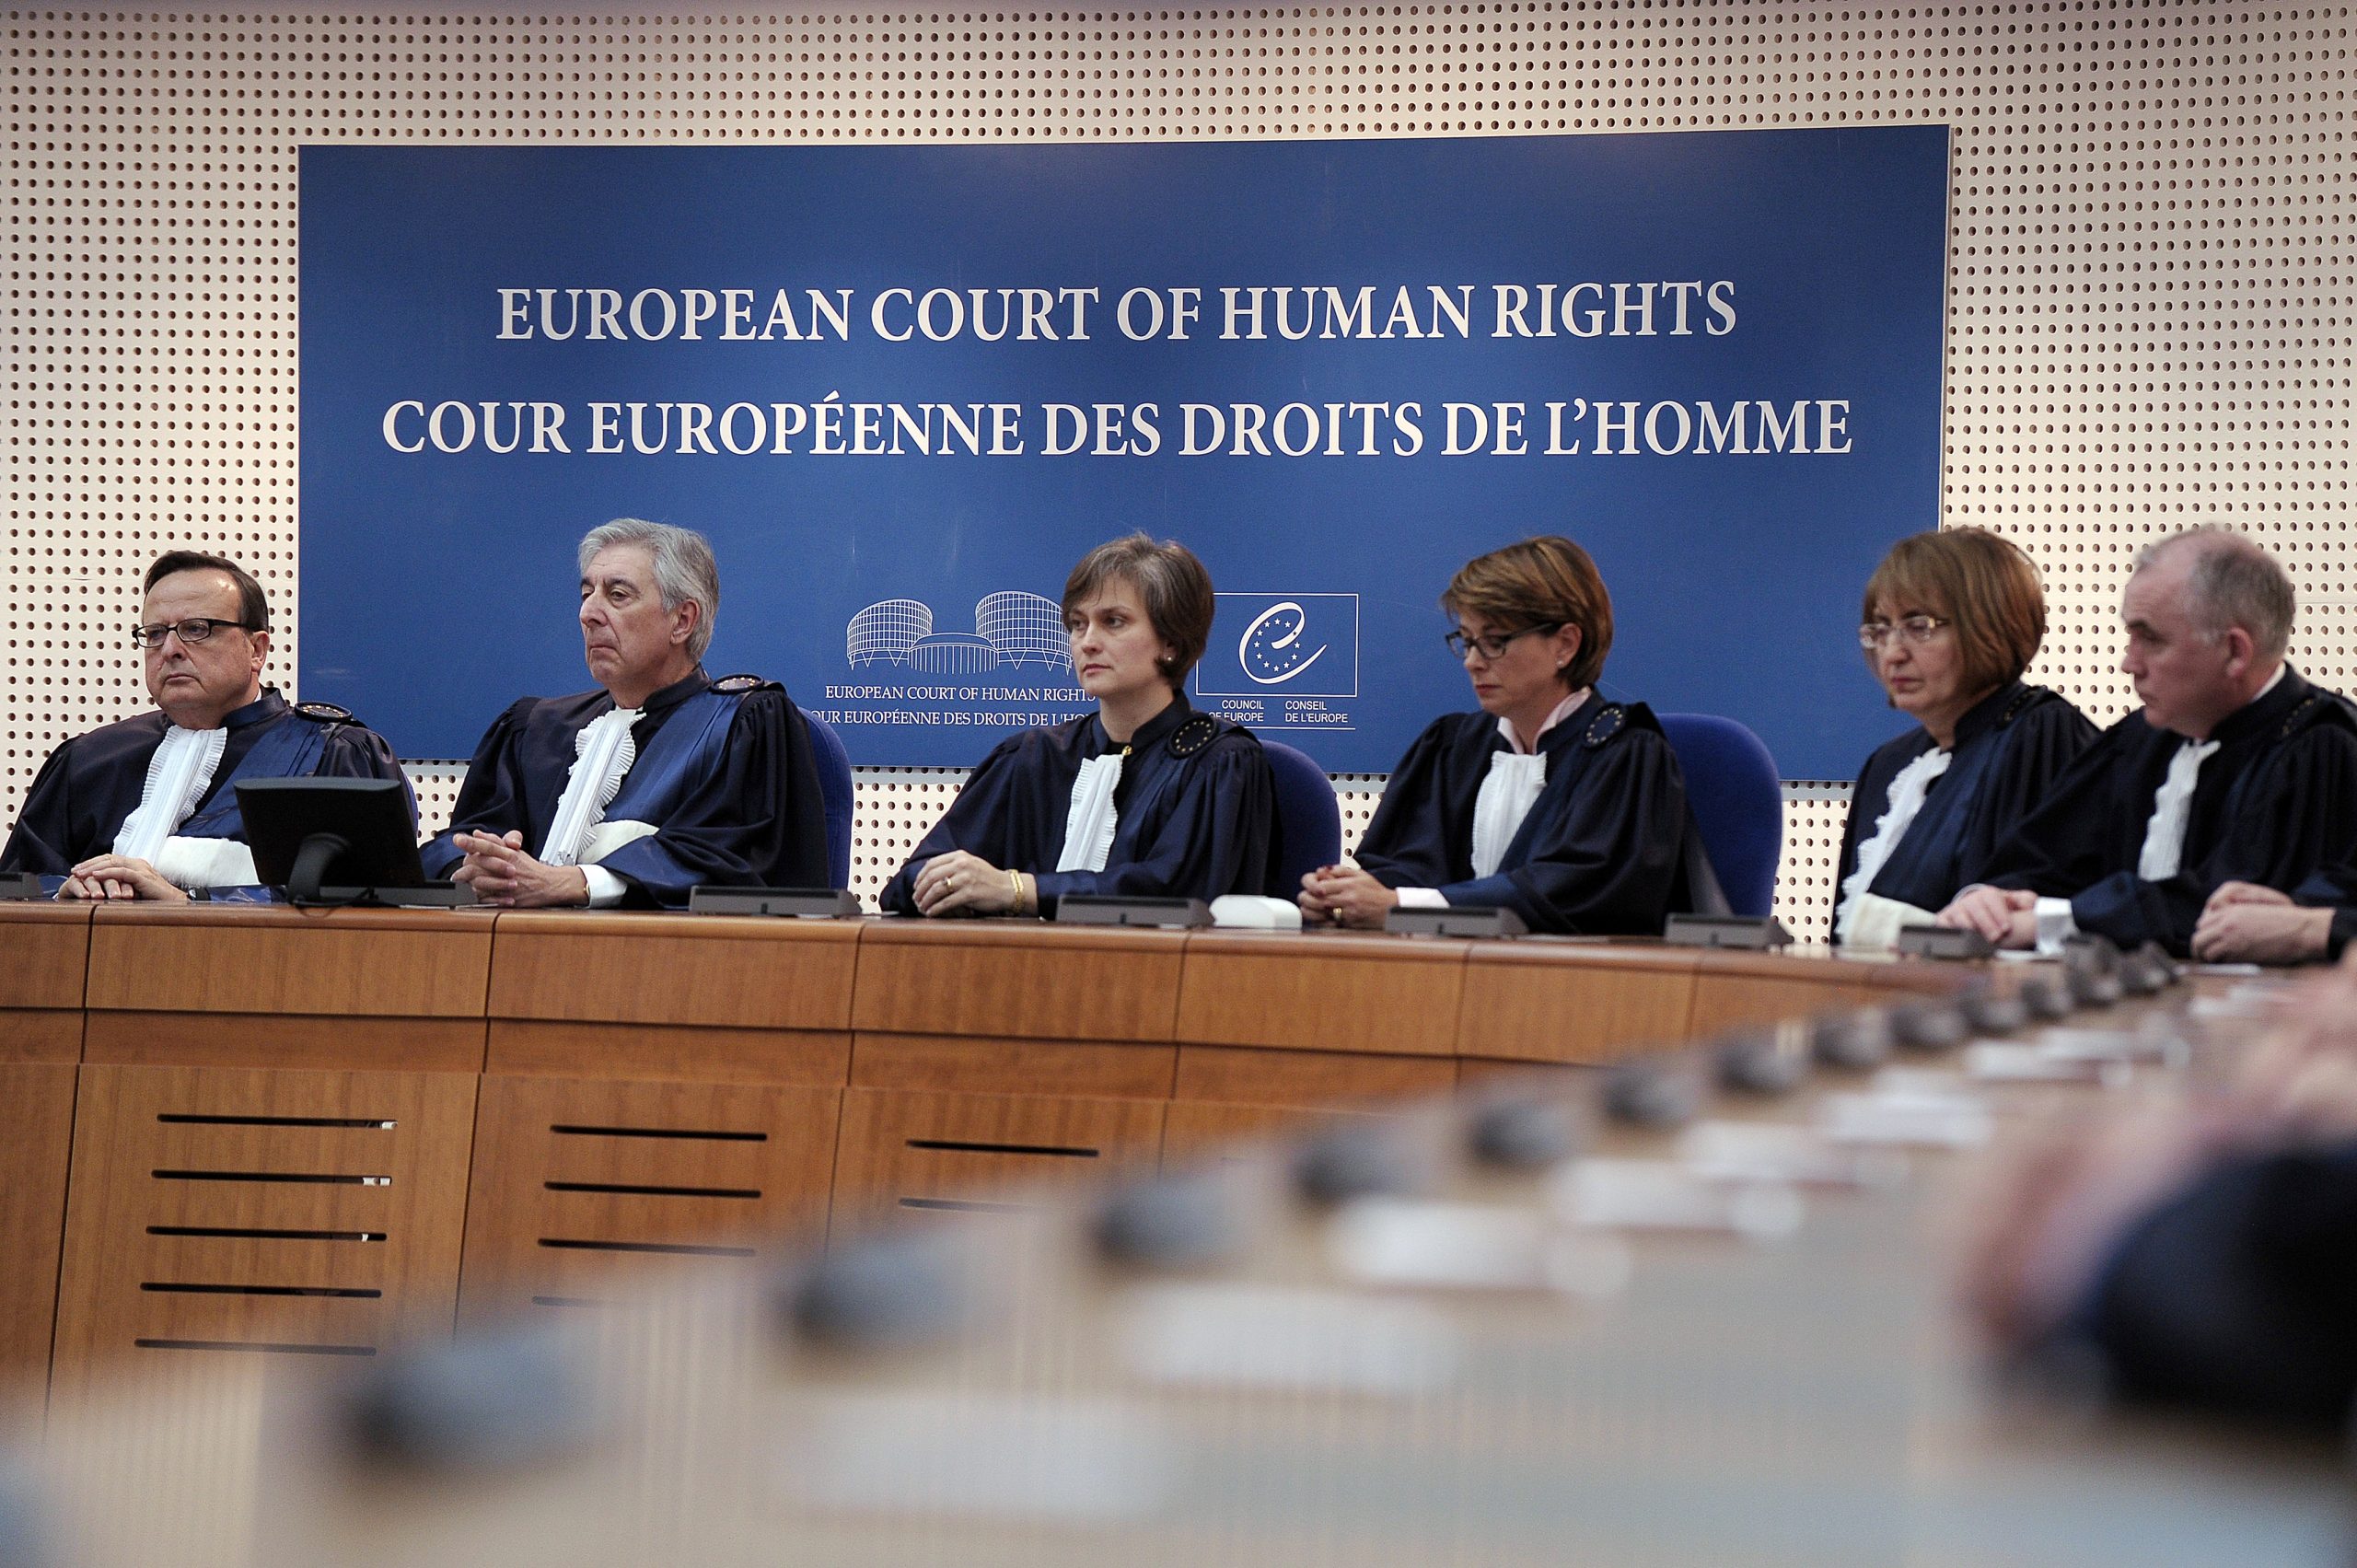 Еспч против российской федерации. Совет Европы и Европейский суд по правам человека. Заседание европейского суда по правам человека. Европейский суд по правам человека в Страсбурге. Европейская комиссия по правам человека.